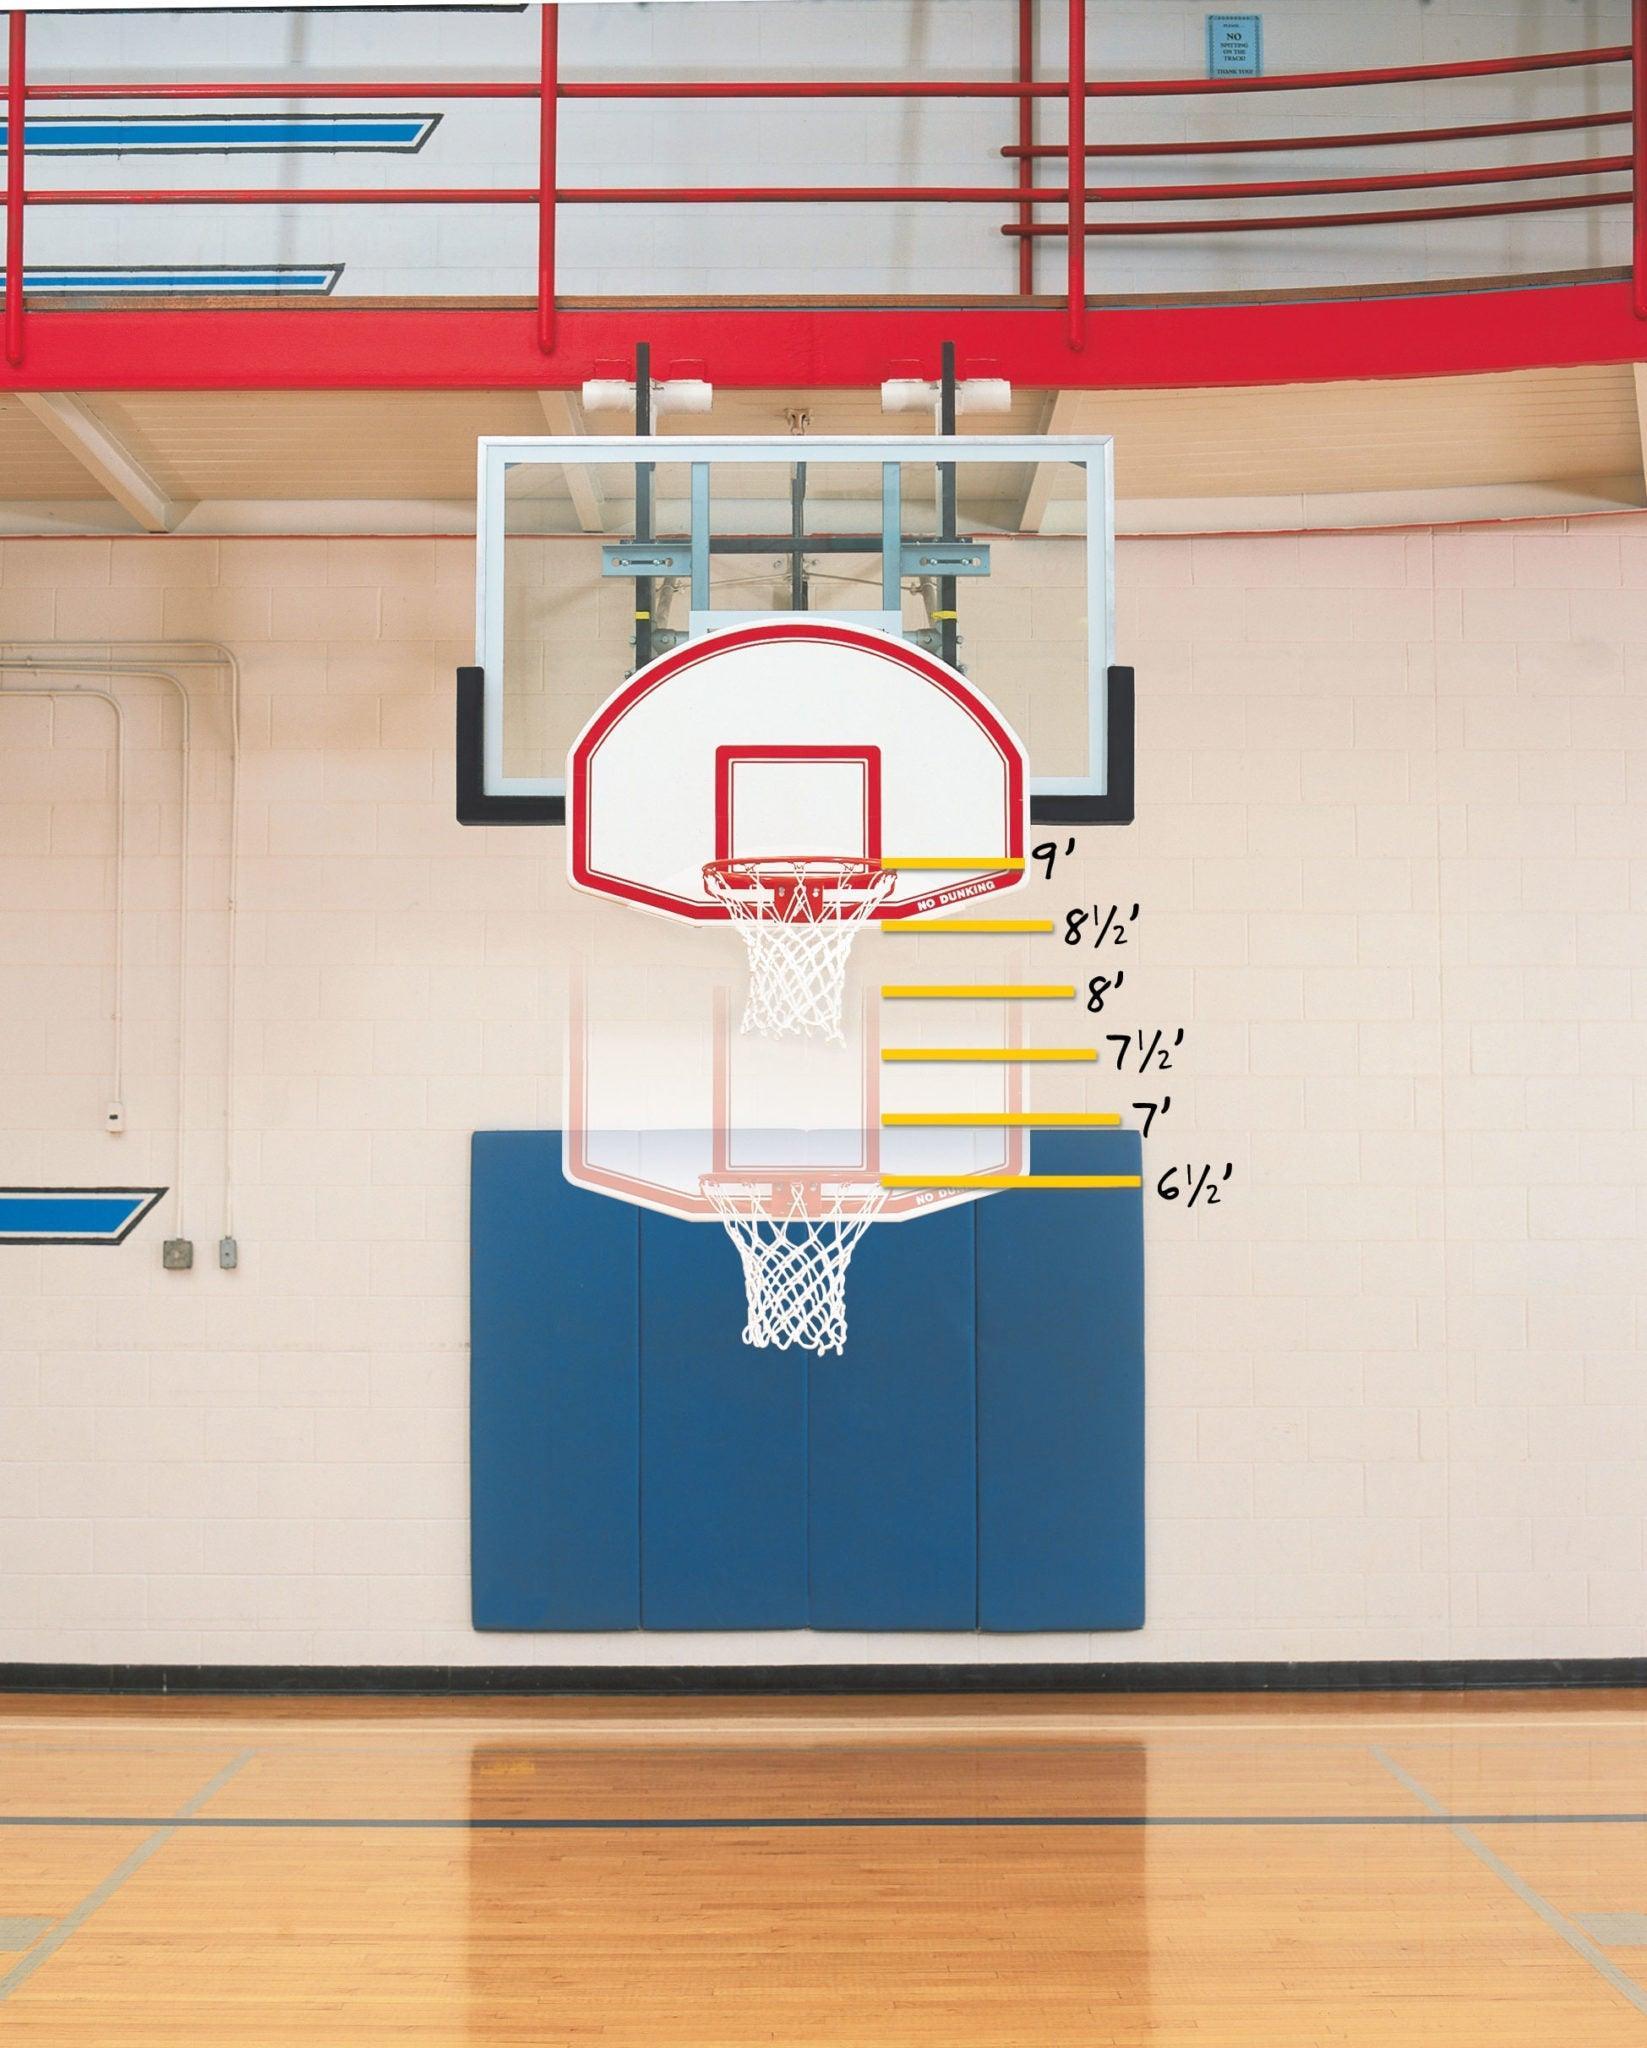 Best Indoor Basketball Hoop In 2023 - Top 10 New Indoor Basketball Hoops  Review 